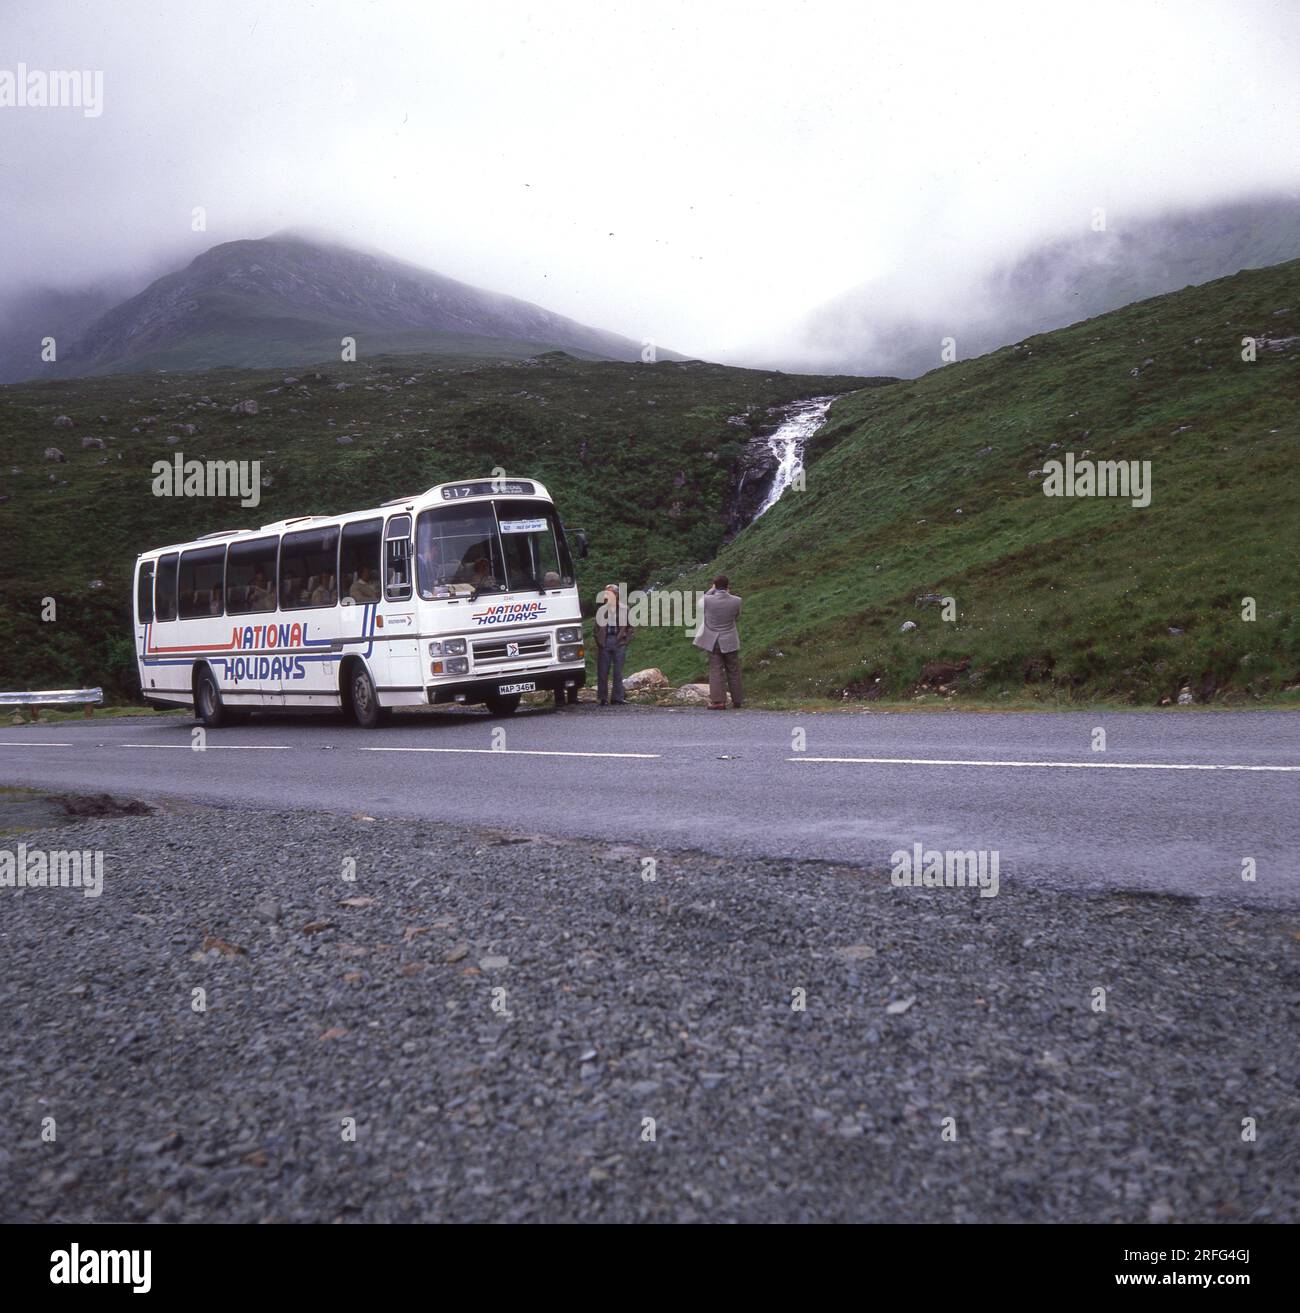 Fine degli anni '1970, storico, un pullman delle feste nazionali parcheggiato su una strada di montagna sull'Isola di Skye, Scottish Highlands, Scozia, Regno Unito. Un viaggiatore di sesso maschile fuori dal pullman che scatta una foto della valle nebbiosa. National Holidays era il ramo turistico della National Bus Company, una compagnia di autobus nazionalizzata, che era stata costituita nel 1969. La NBC è stata rinominata National Express nel 1974, con il nuovo marchio di strisce blu e bianche introdotto nel 1978. A metà degli anni '80, la National Bus Company fu smantellata, con National Holidays venduta a Pleasurama nel 1986. Foto Stock